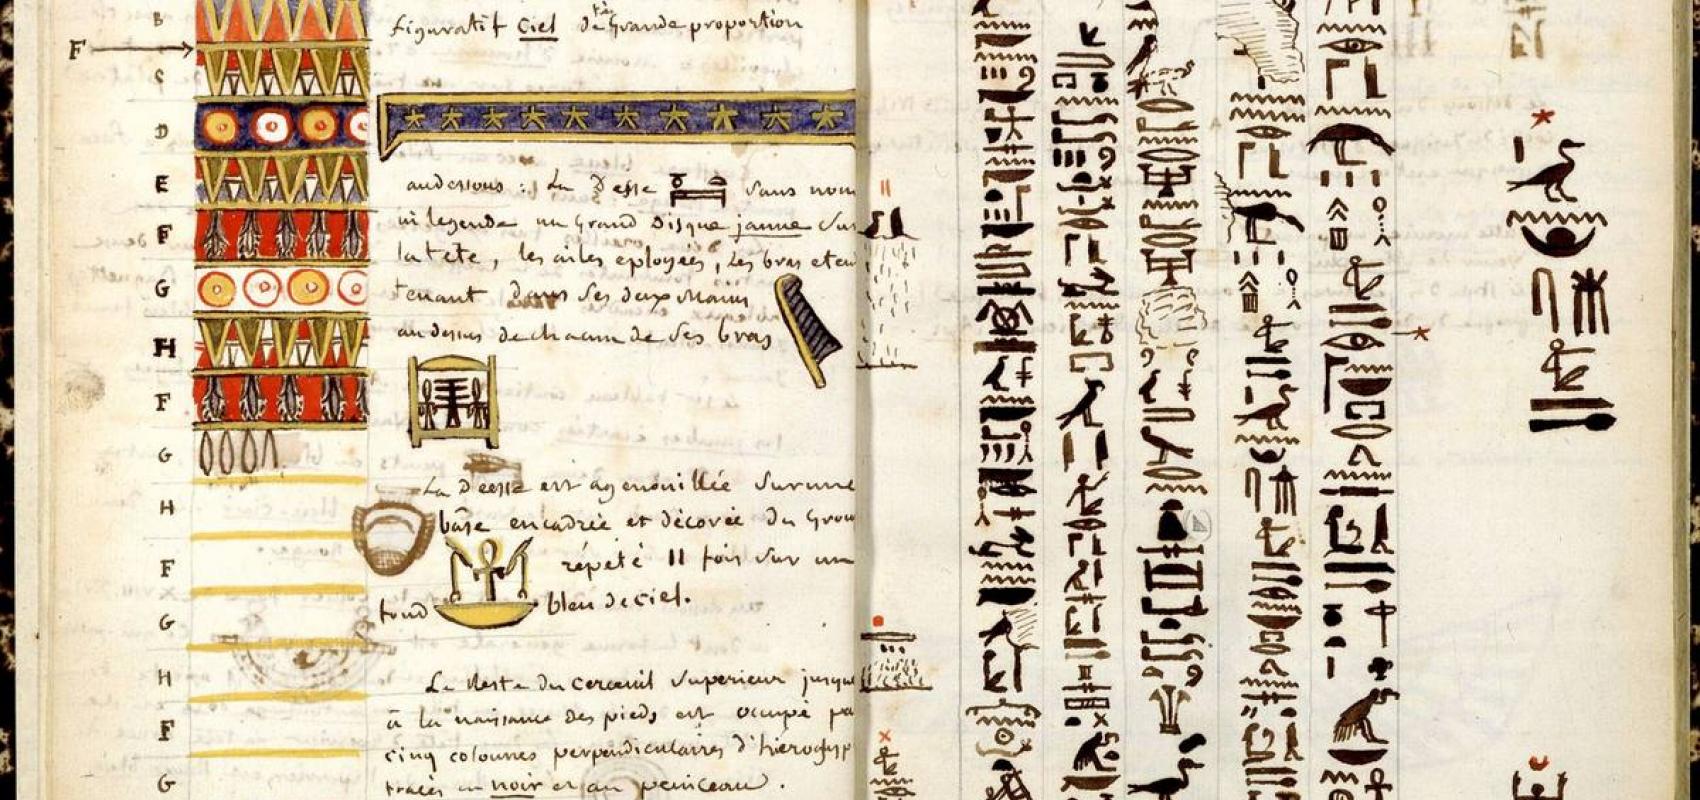 Carnet de notes manuscrit – Copies d'inscriptions de momies – Jean-François Champollion Le Jeune -  - BnF, département des Manuscrits